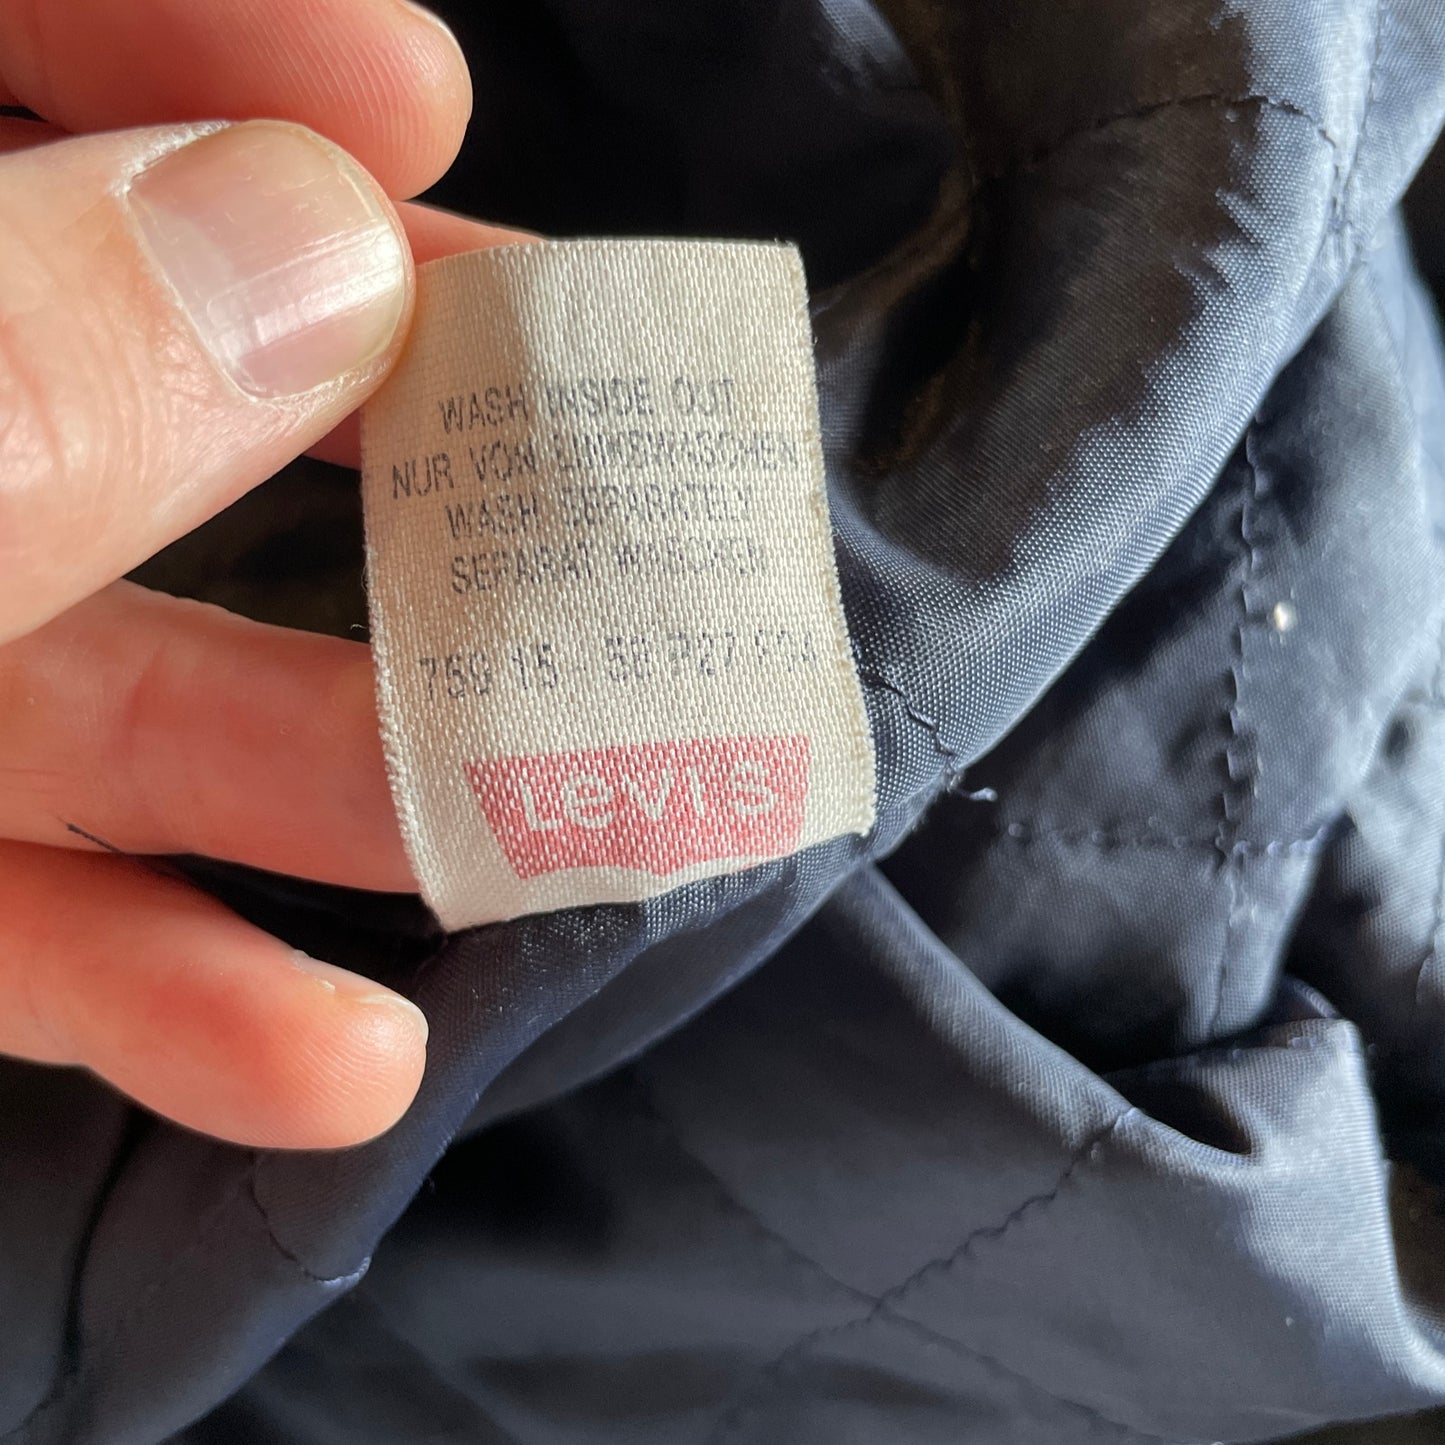 Levi’s workwear chore jacket (XL)